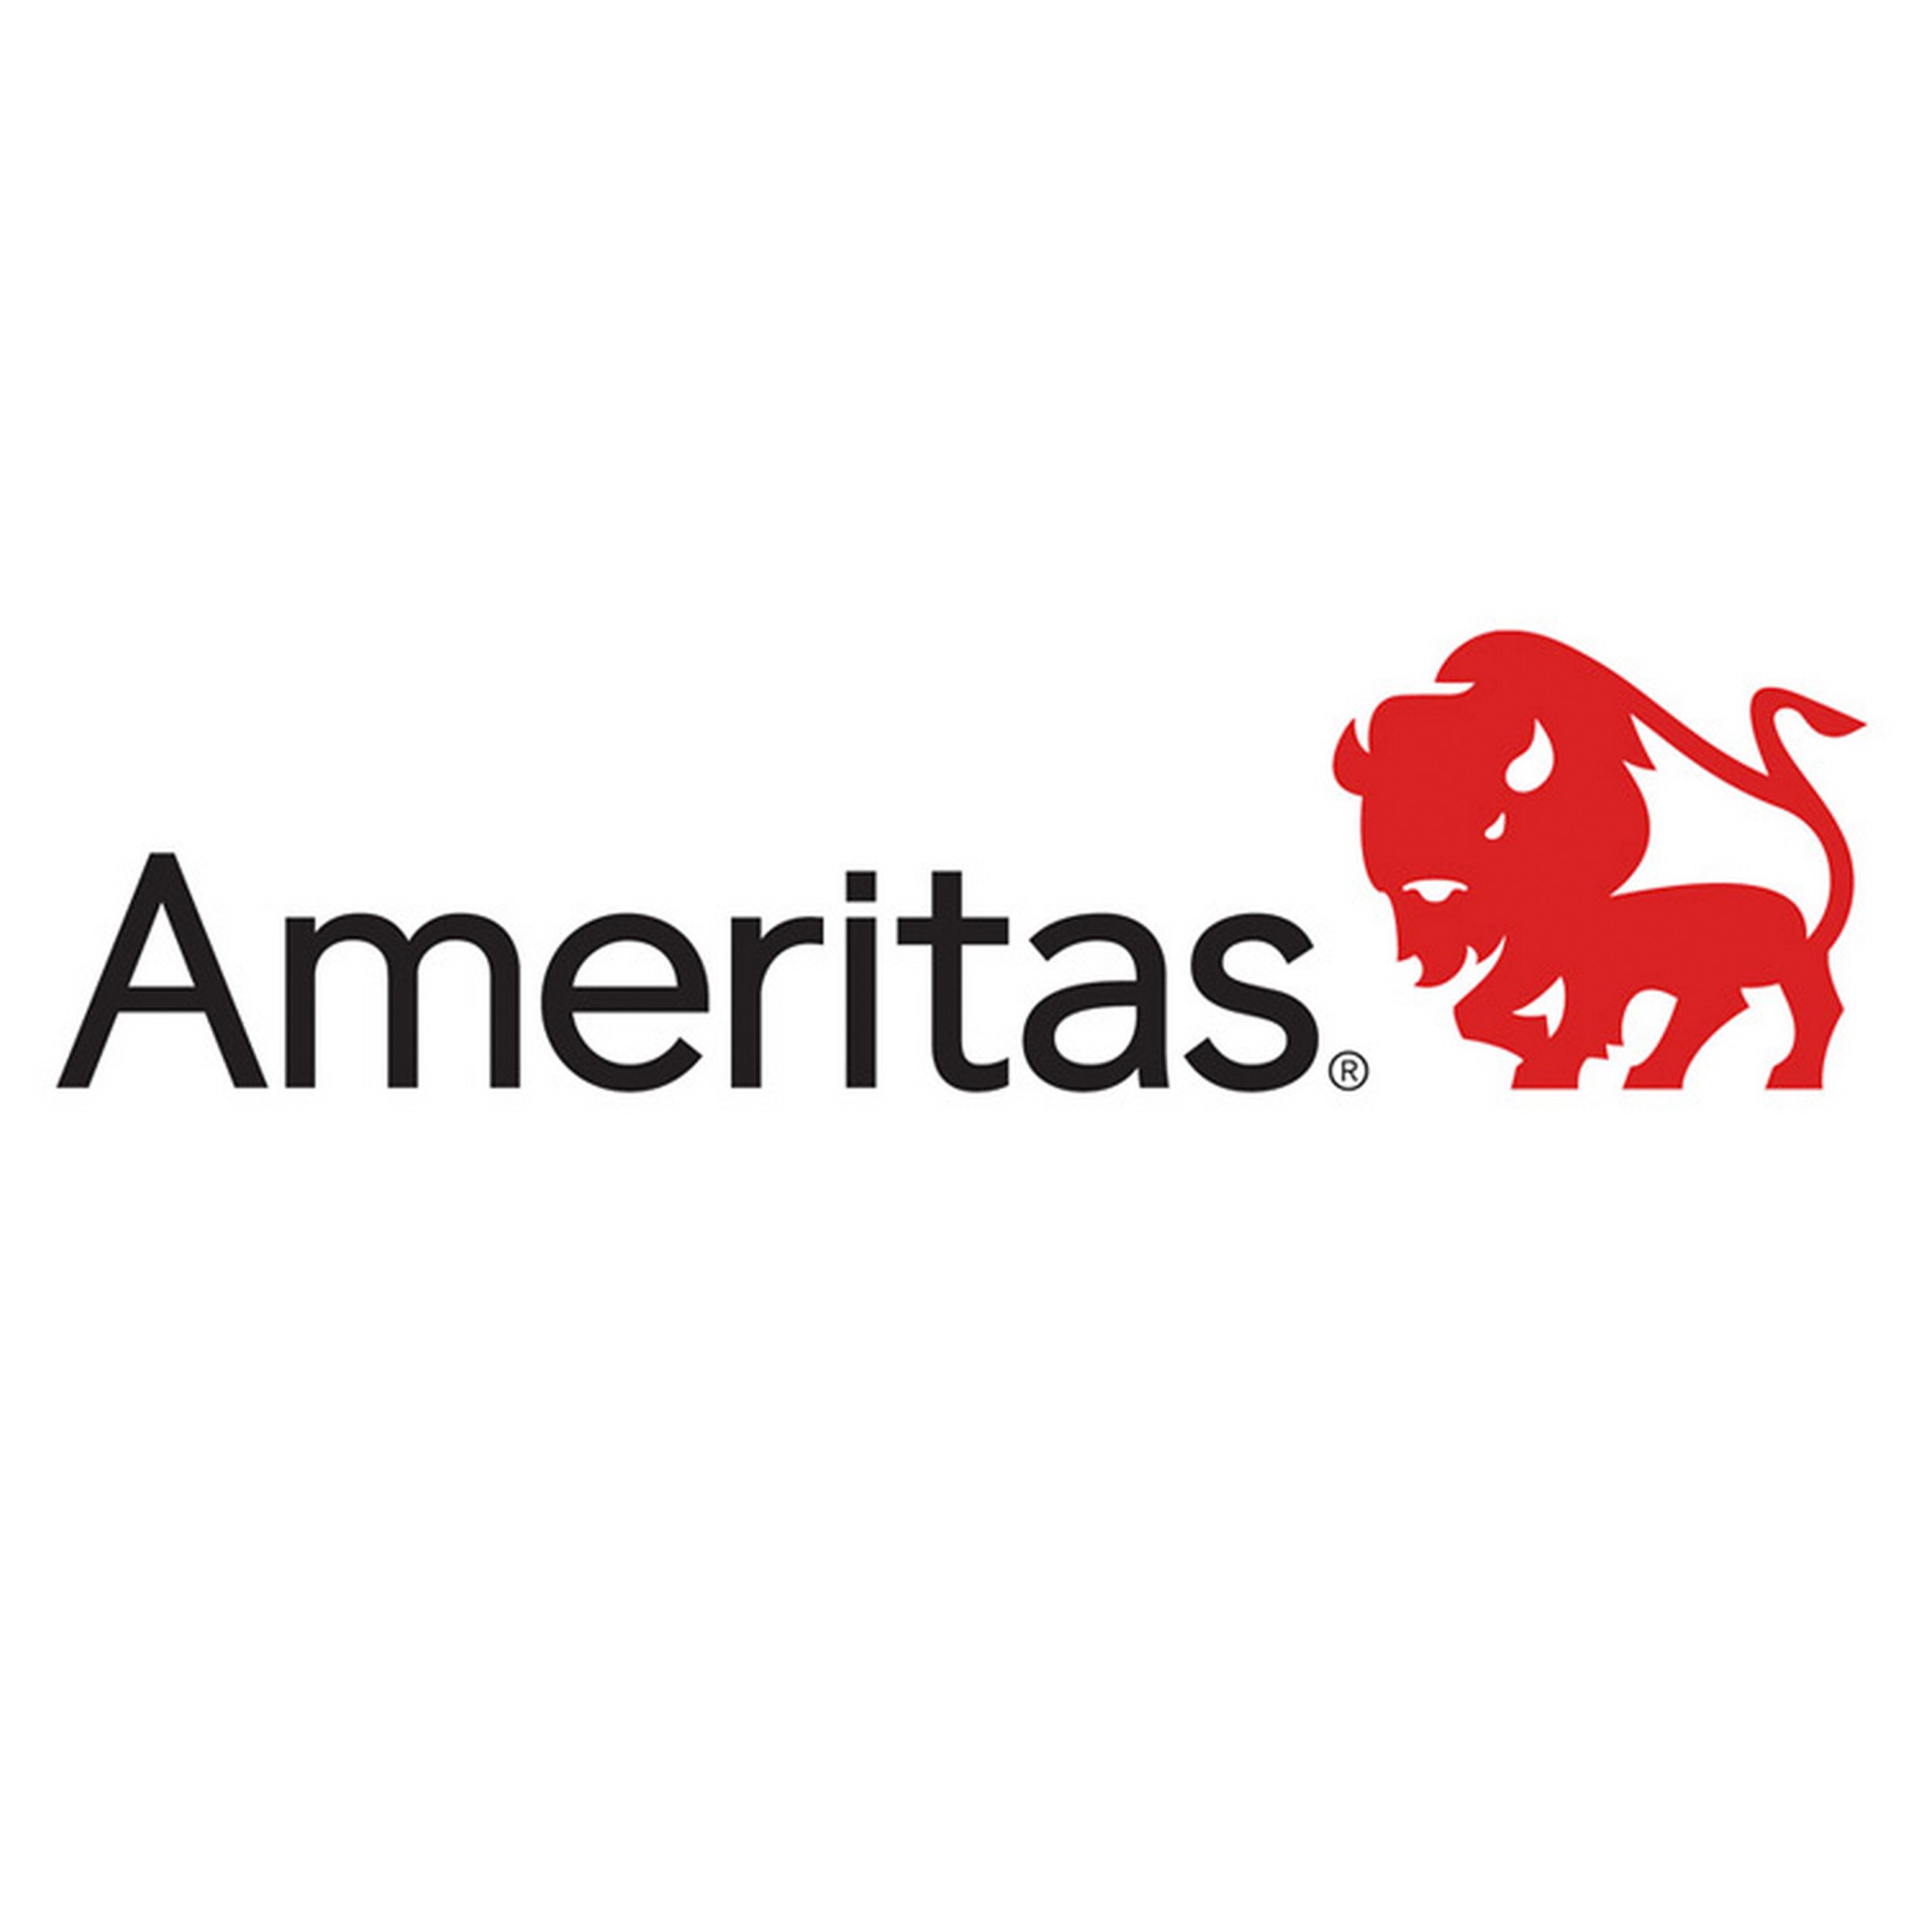 Ameritas Insurance